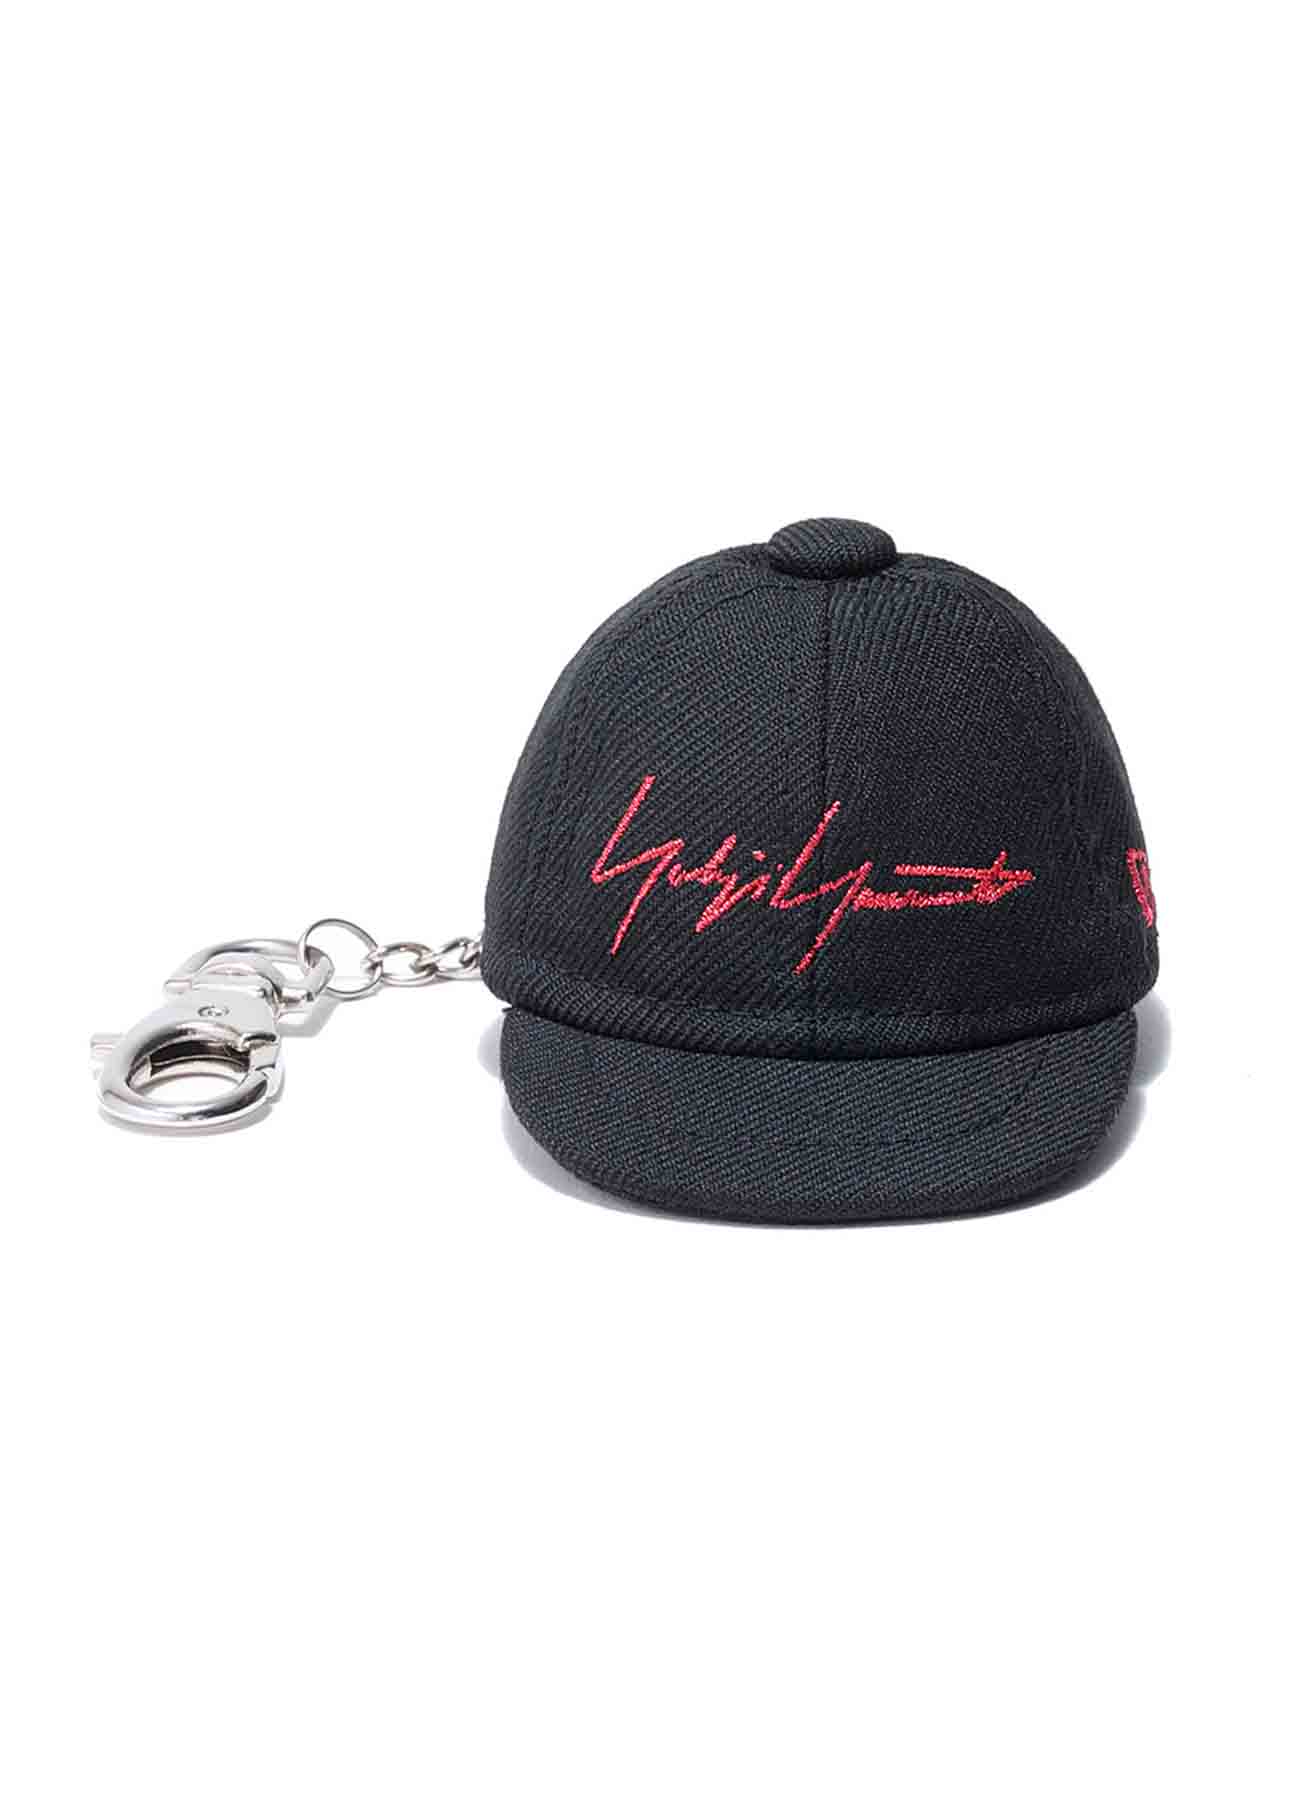 Yohji Yamamoto × New Era METALLIC RED SIGNATURE CAP KEY HOLDER